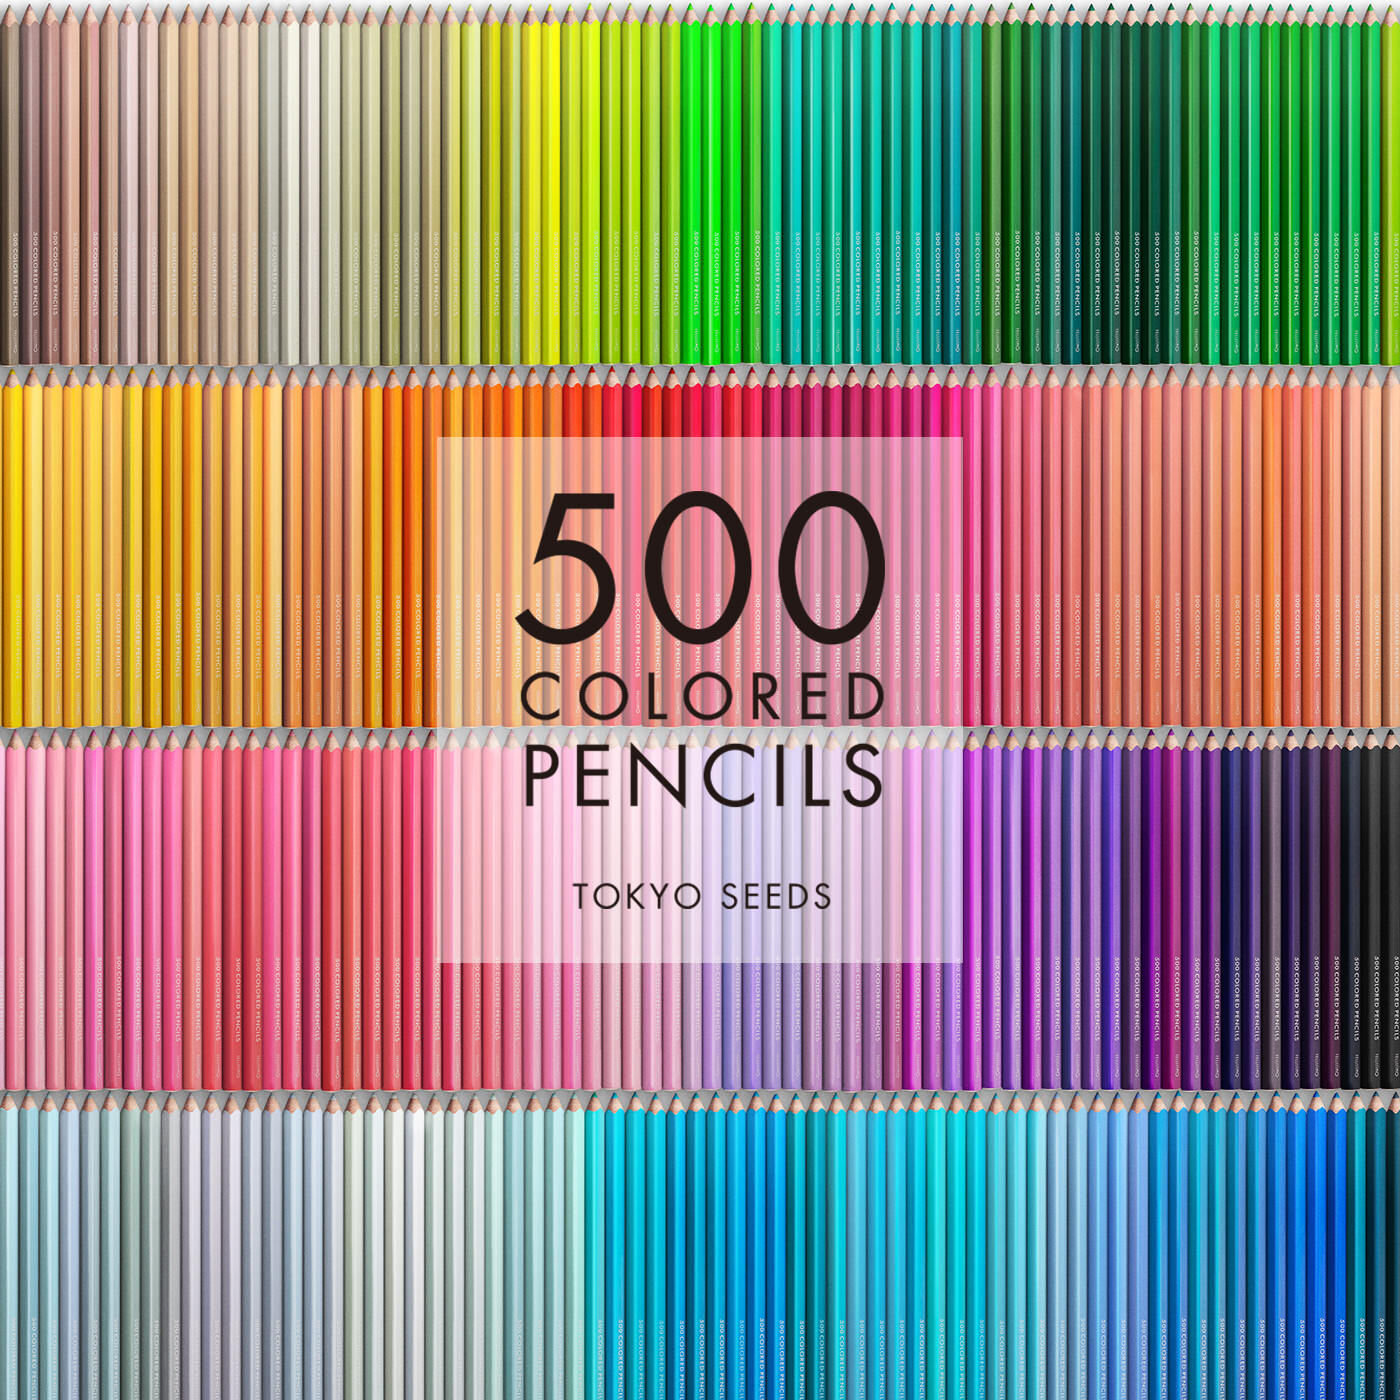 Real Stock|【393/500 SUAVE ENTRANCE】500色の色えんぴつ TOKYO SEEDS|1992年、世界初の「500色」という膨大な色数の色えんぴつが誕生して以来、その販売数は発売当初から合わせると、世界55ヵ国10万セット以上。今回、メイド・イン・ジャパンにこだわり、すべてが新しく生まれ変わって登場しました。